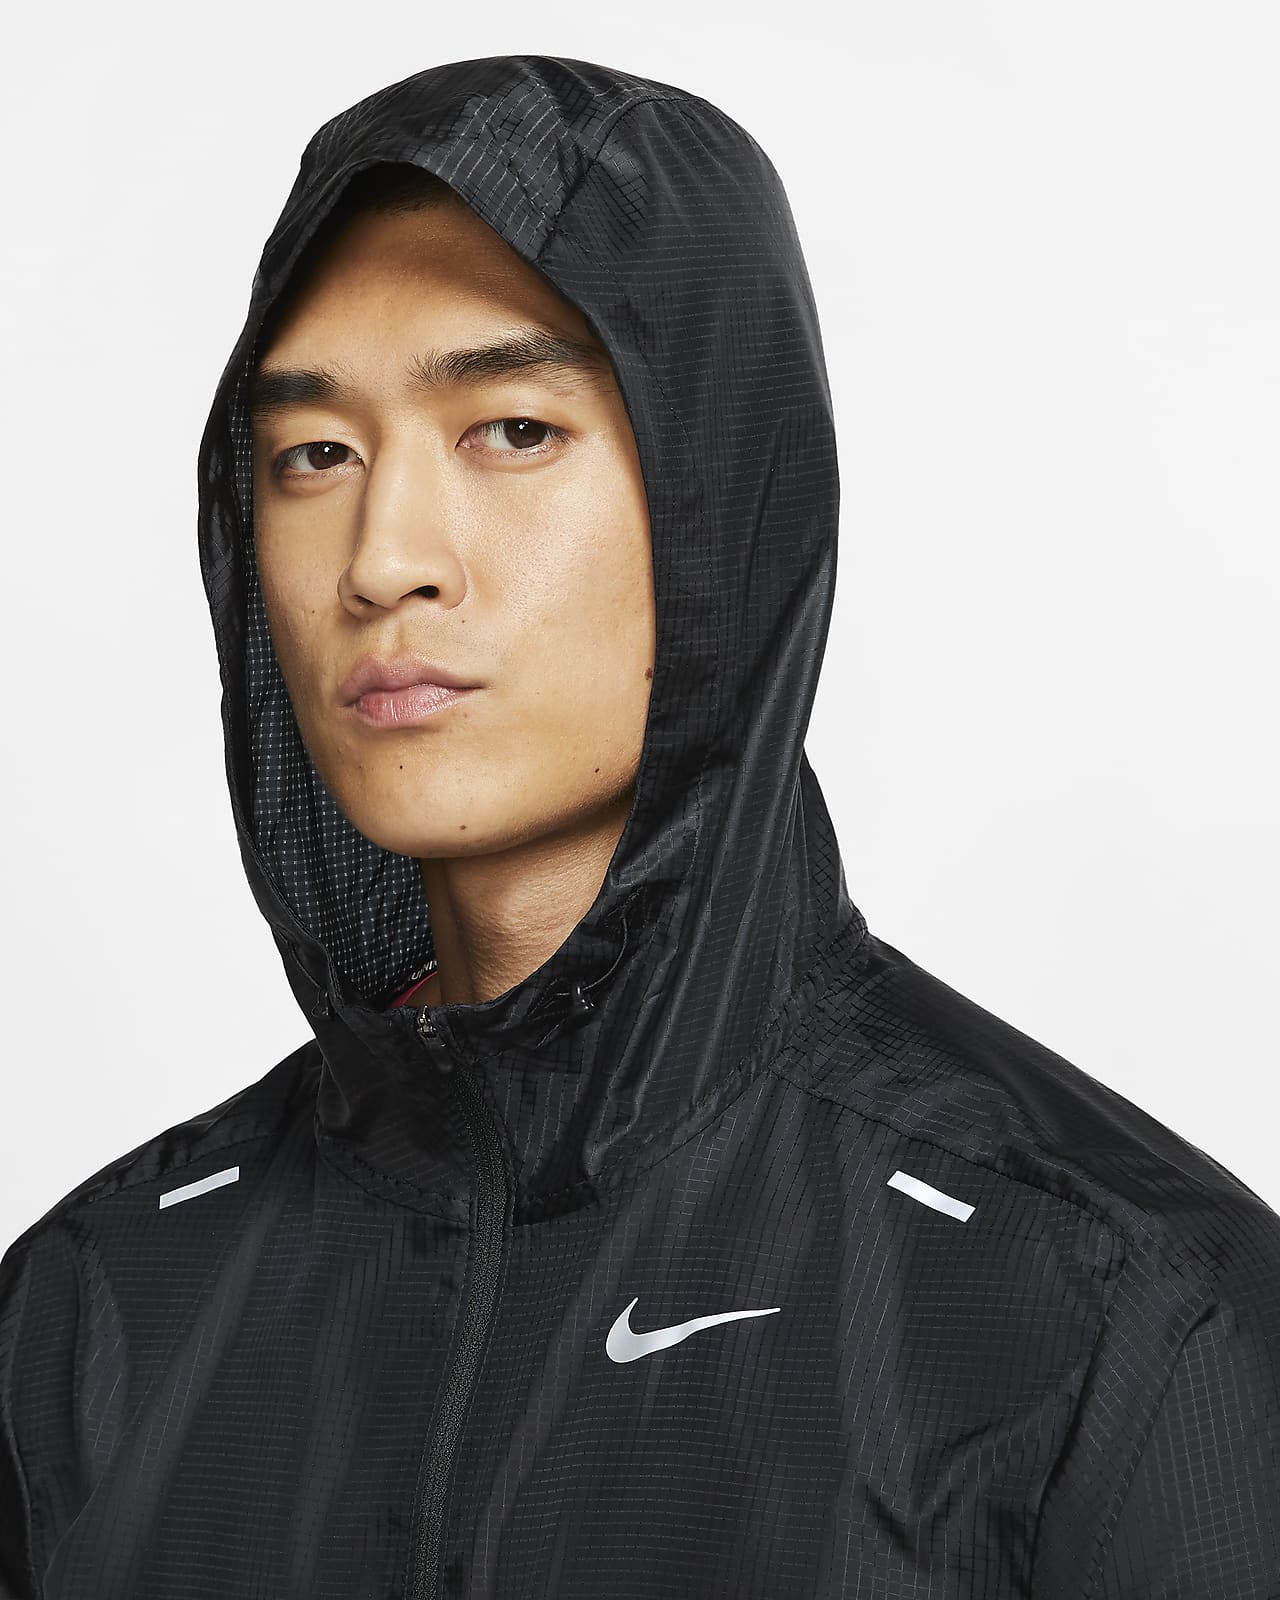 Nike Windrunner Jackets